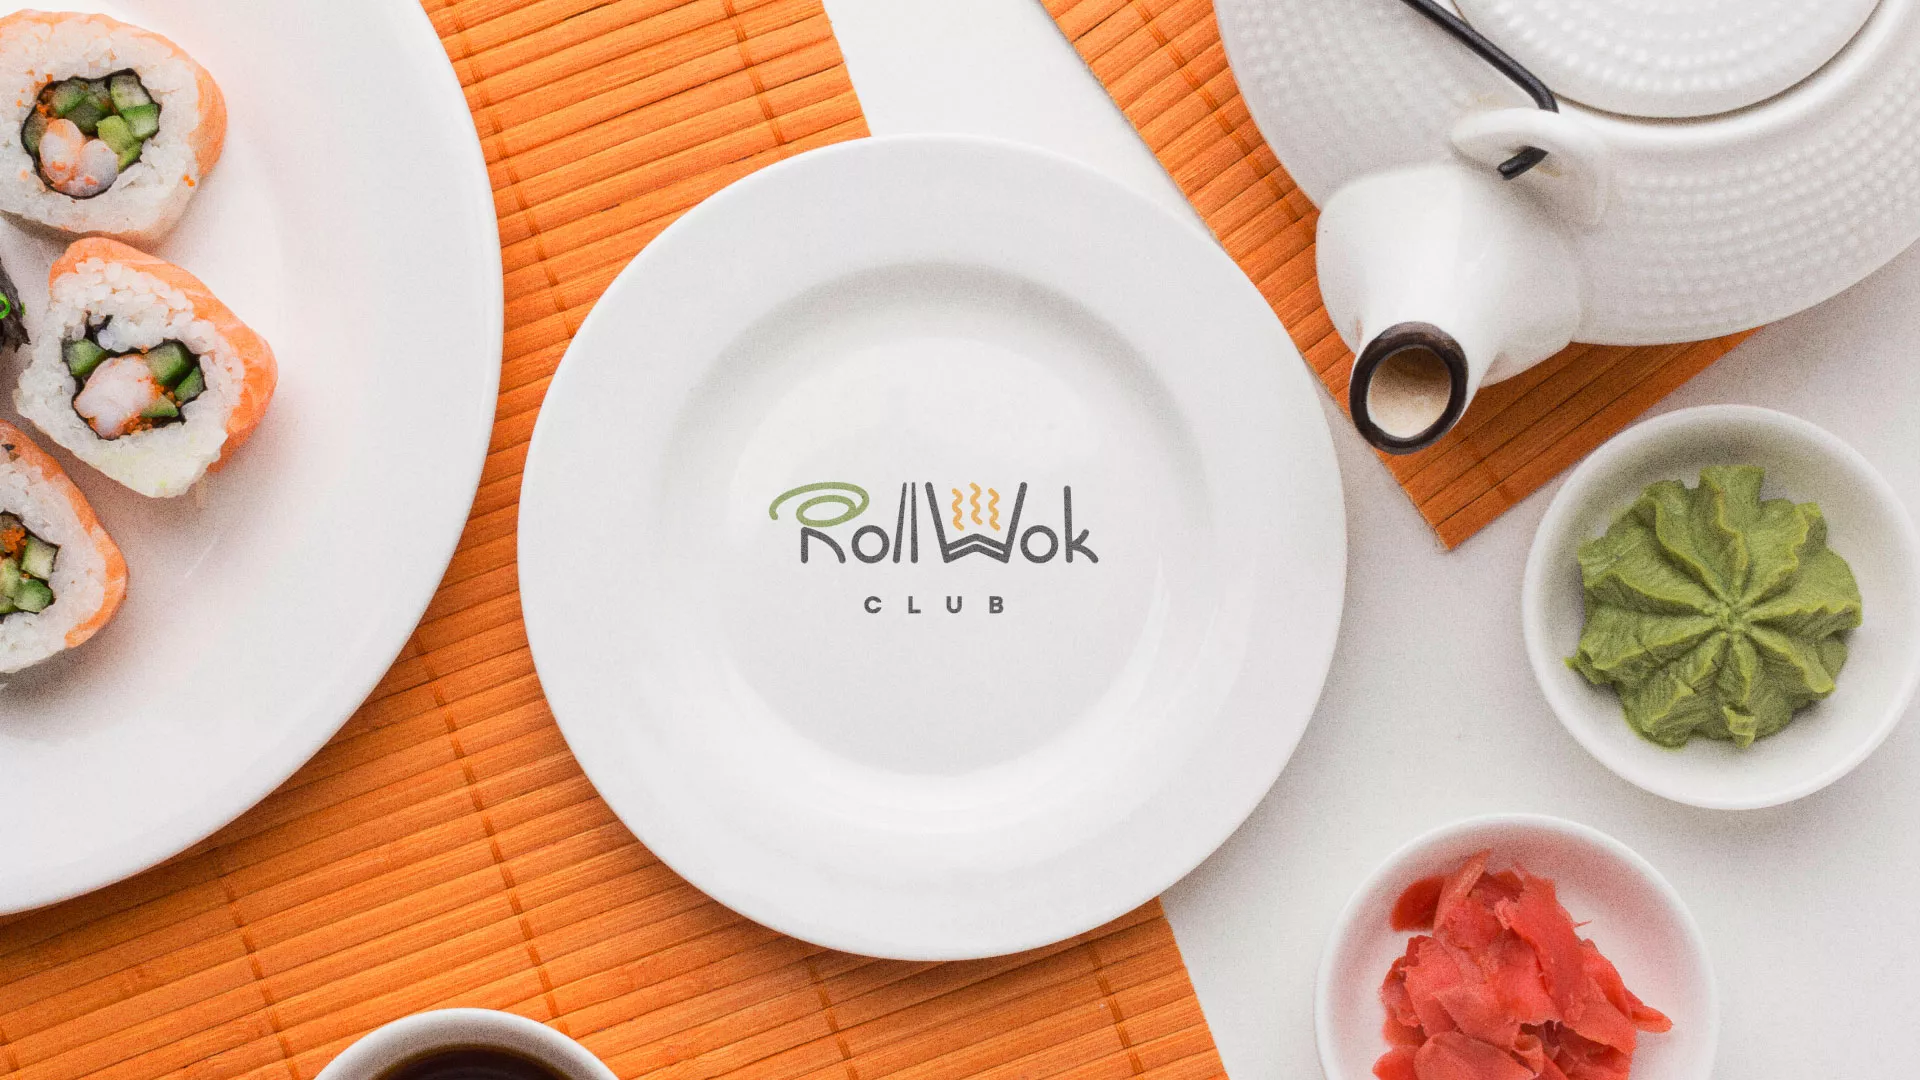 Разработка логотипа и фирменного стиля суши-бара «Roll Wok Club» в Туапсе